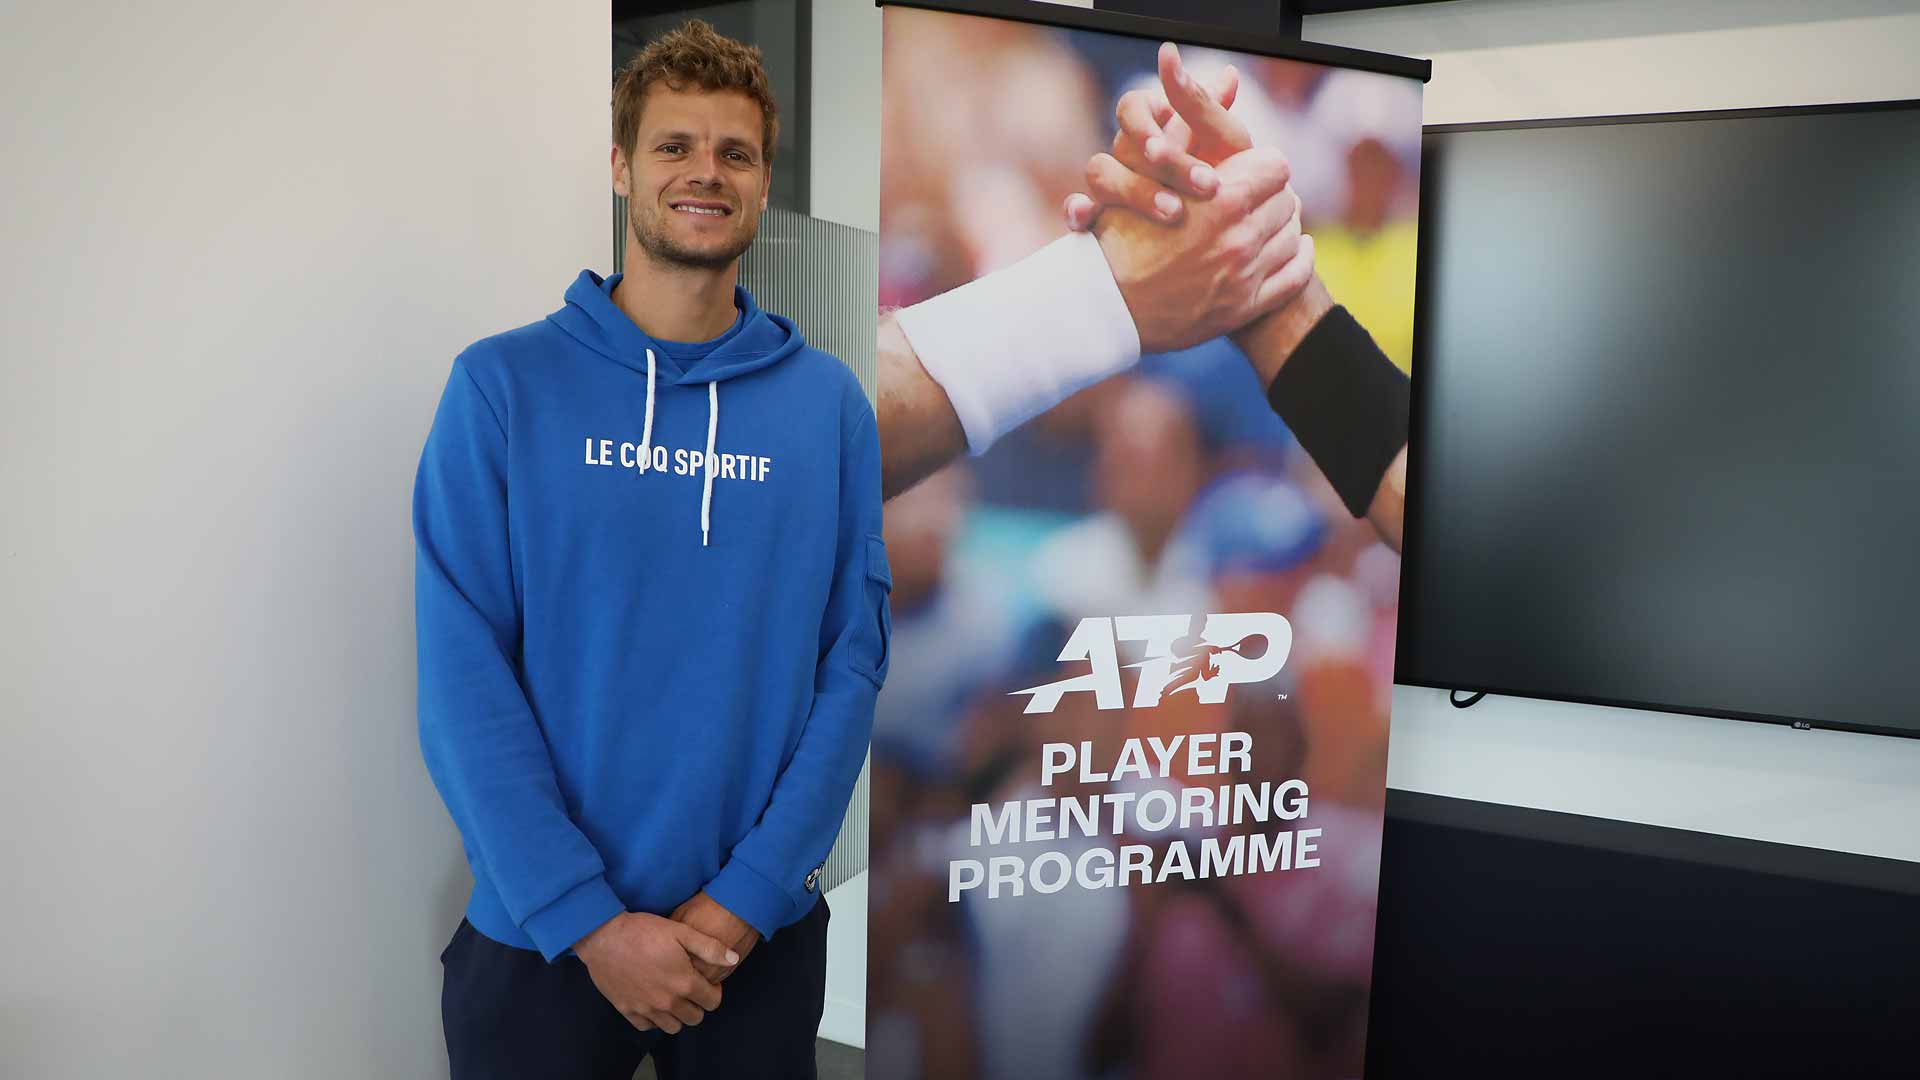 Conozca el Programa ATP Player Mentoring y por qué Hanfmann, rival de Sinner en Wimbledon, está "emocionado"